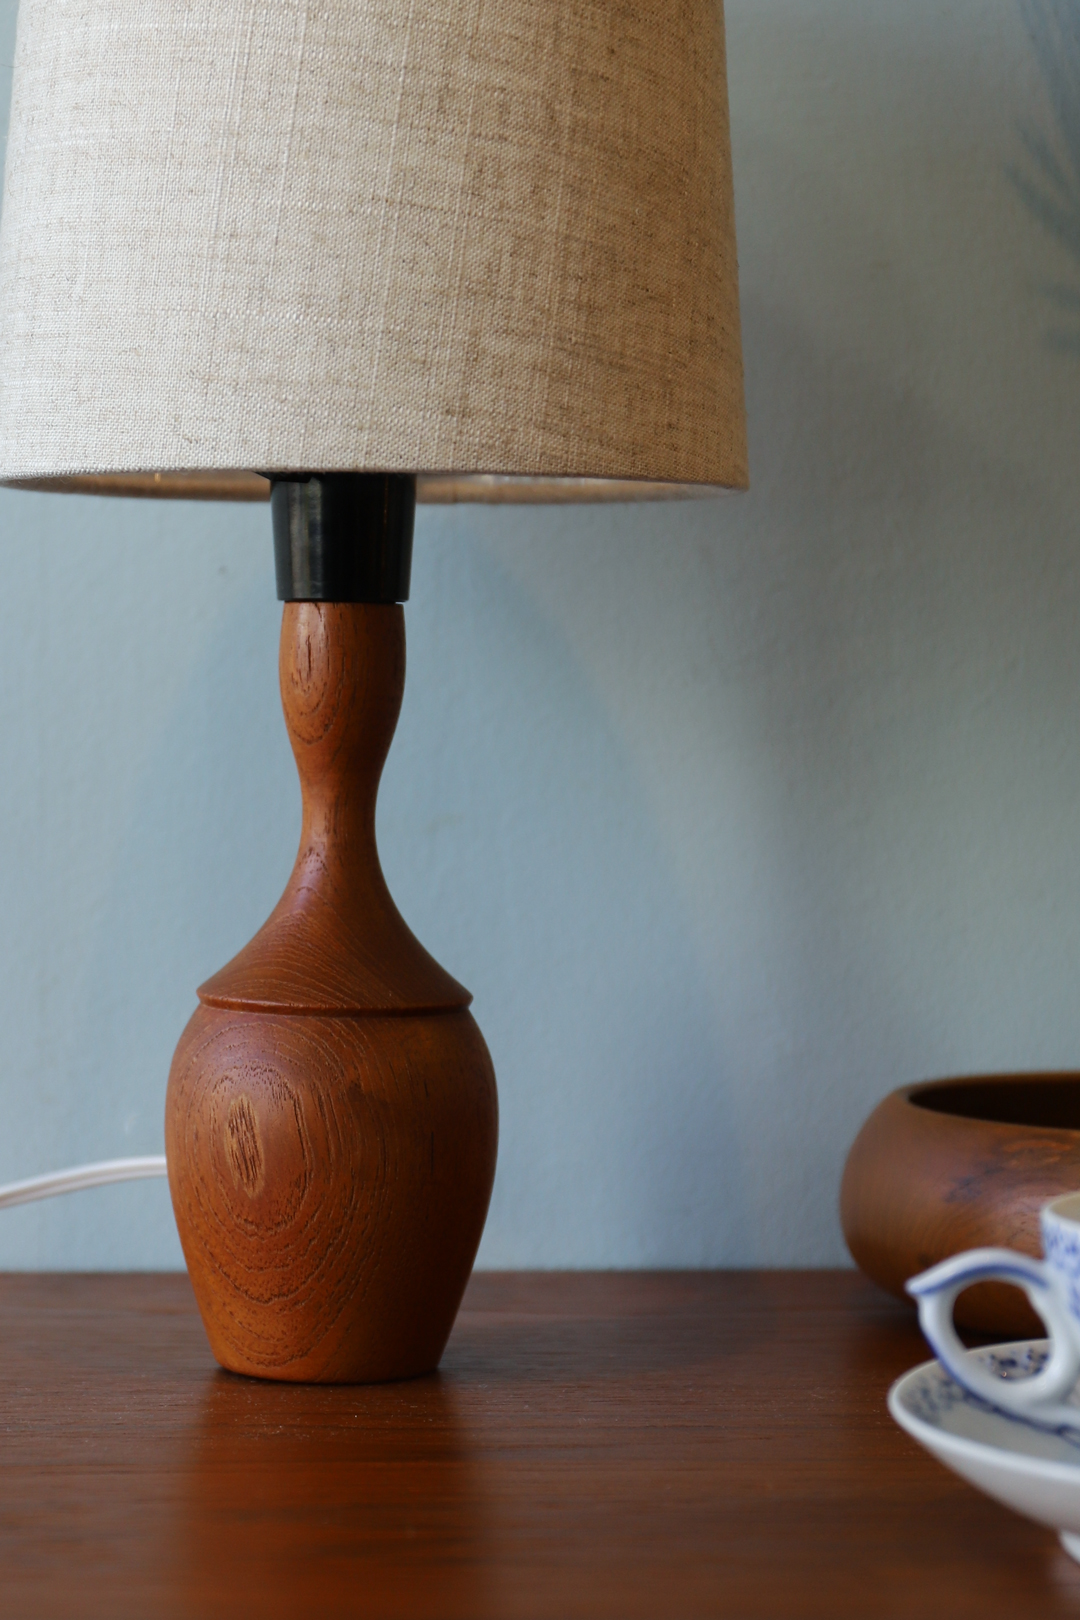 Danish Vintage Teakwood Mini Table Lamp/デンマークヴィンテージ テーブルランプ チーク材 照明 北欧モダン インテリア ナチュラル